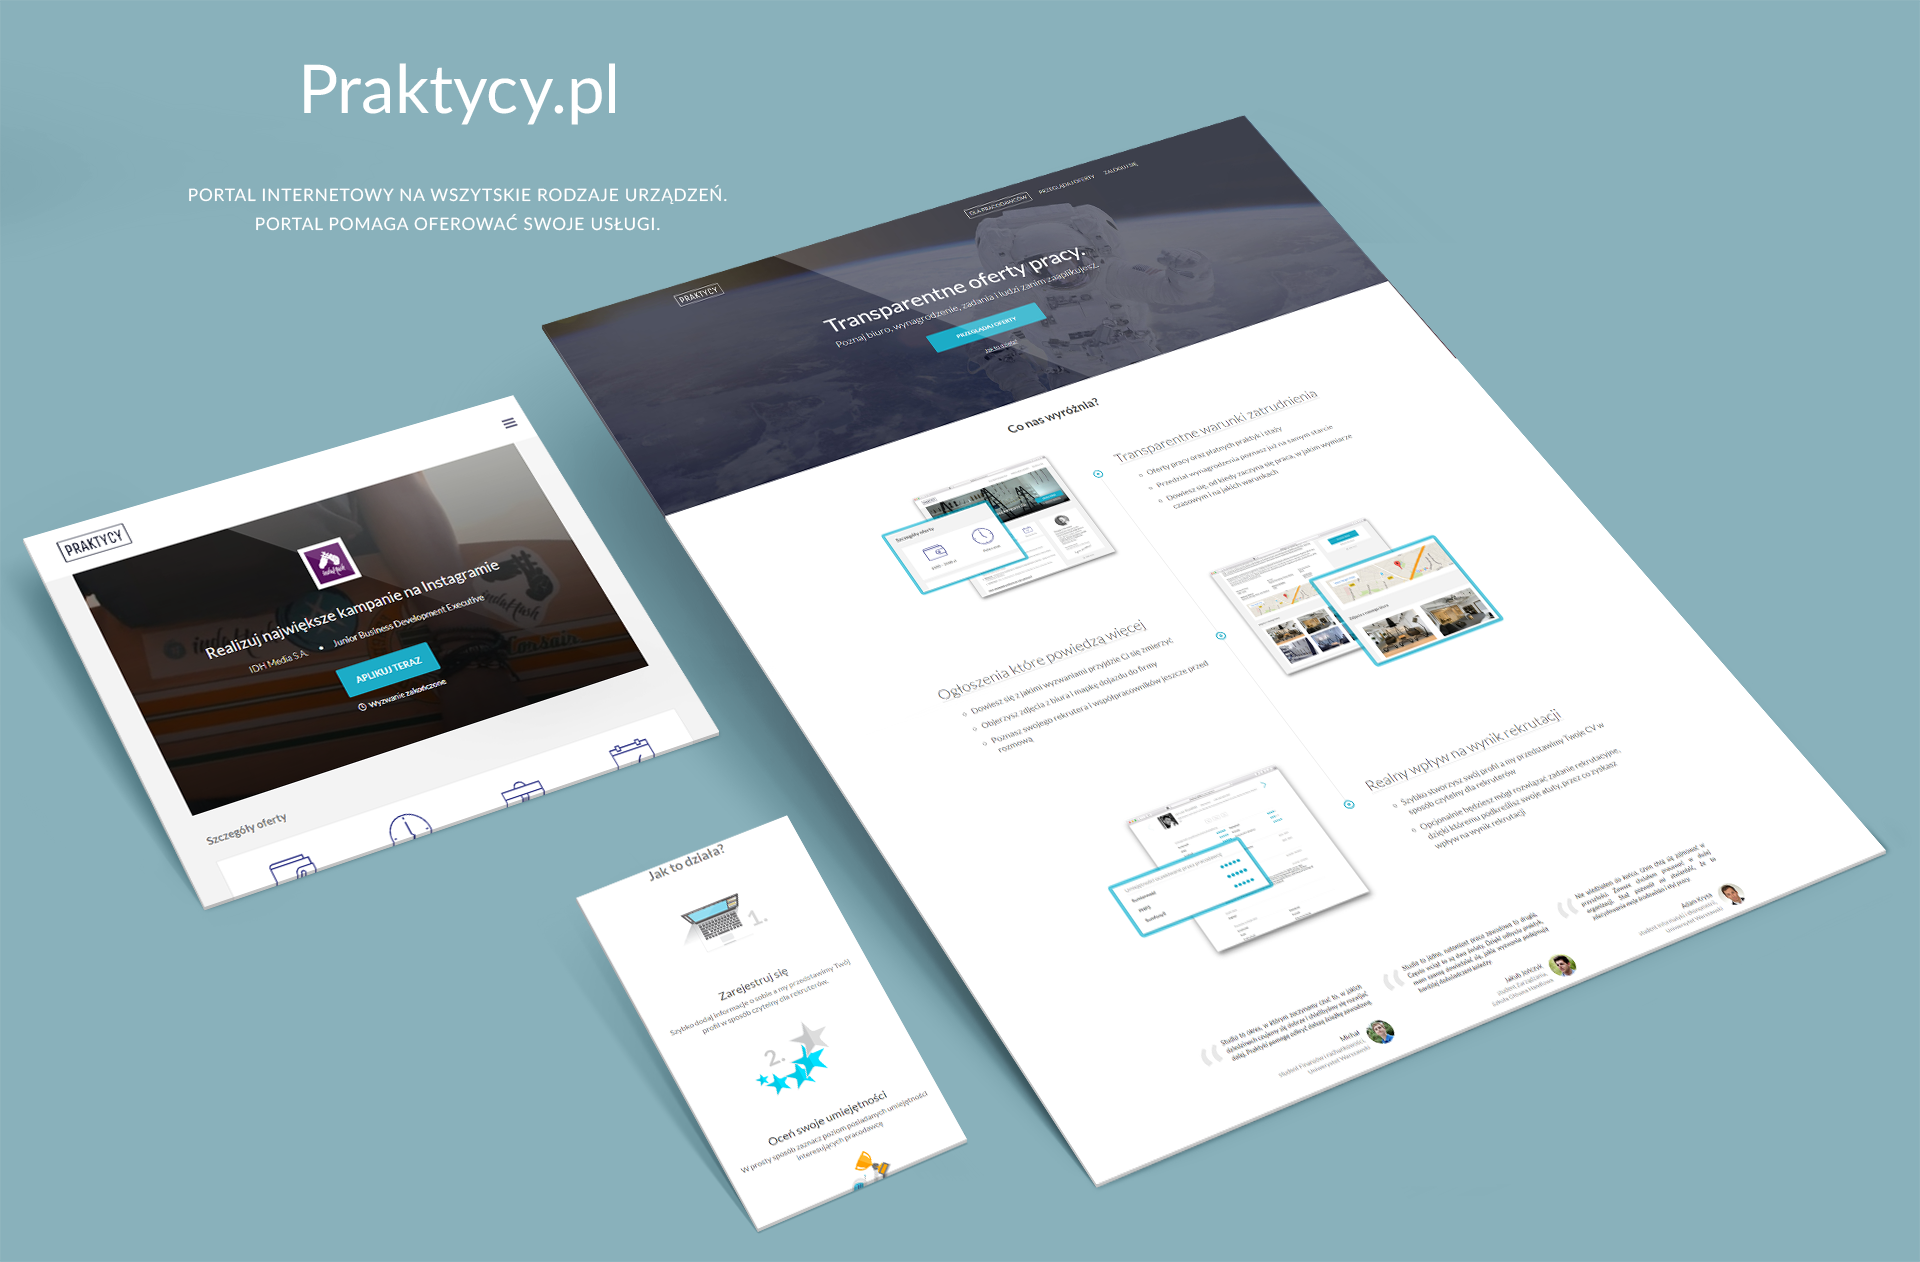 Strona www startupu praktycy.pl